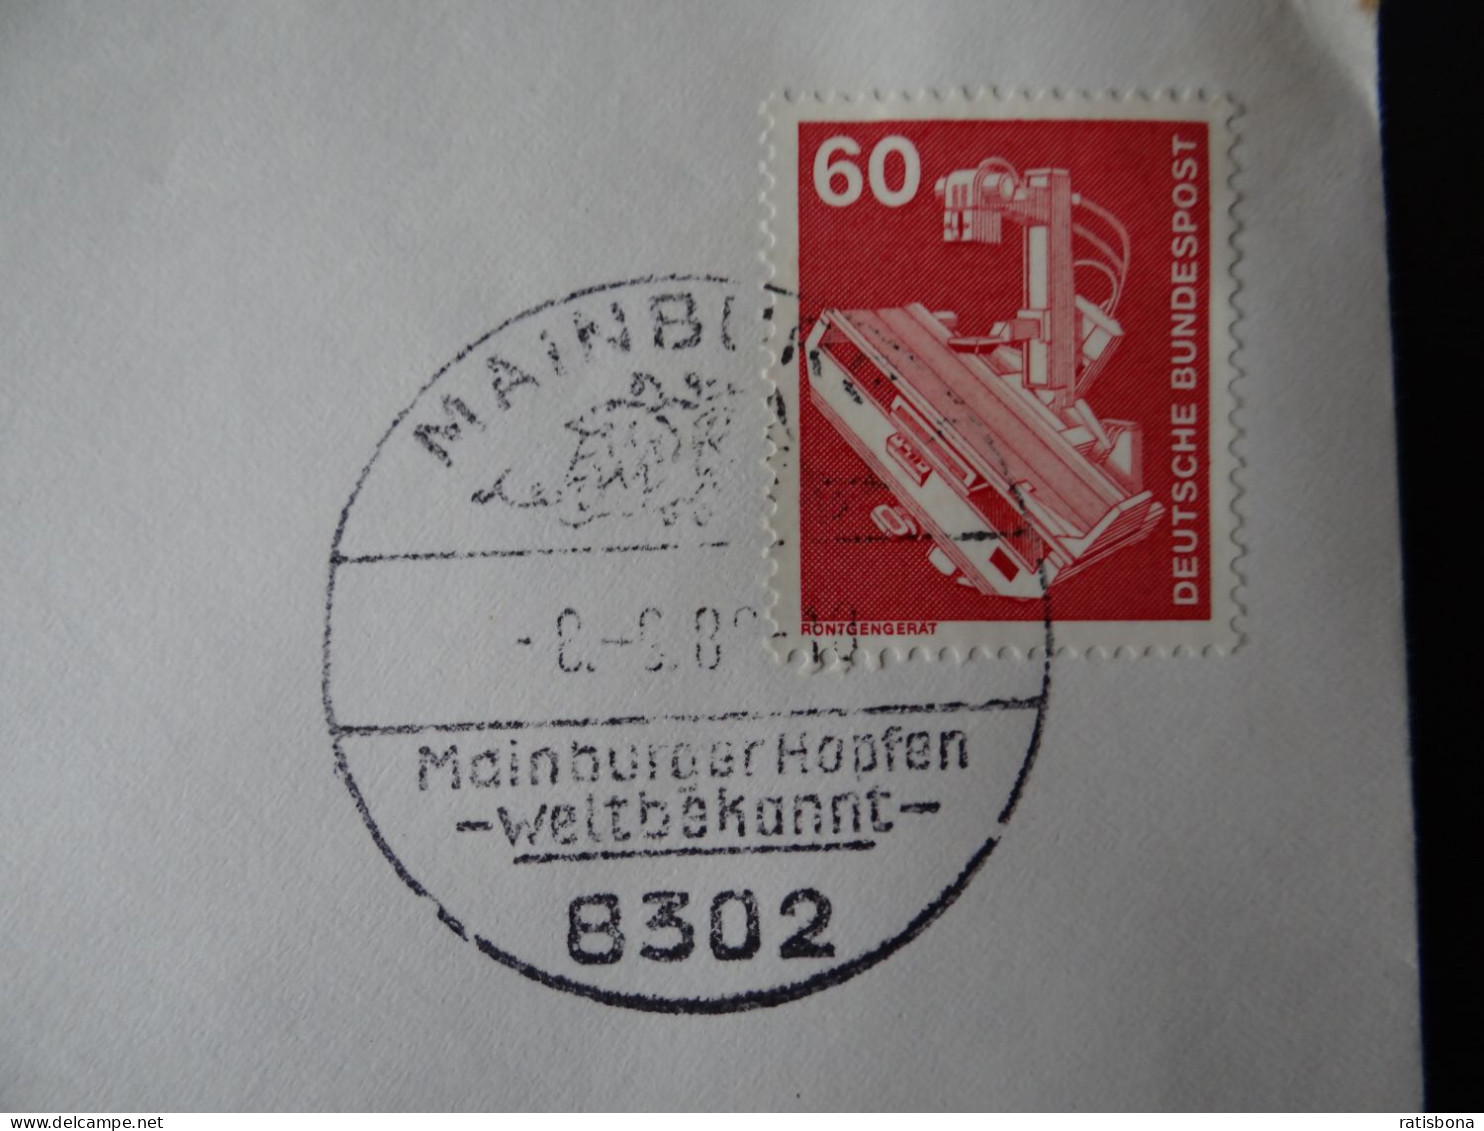 8302 Mainburg - MainburgerHopfen Weltbekannt - Sonderstempel Rund 1980 - Frankeermachines (EMA)